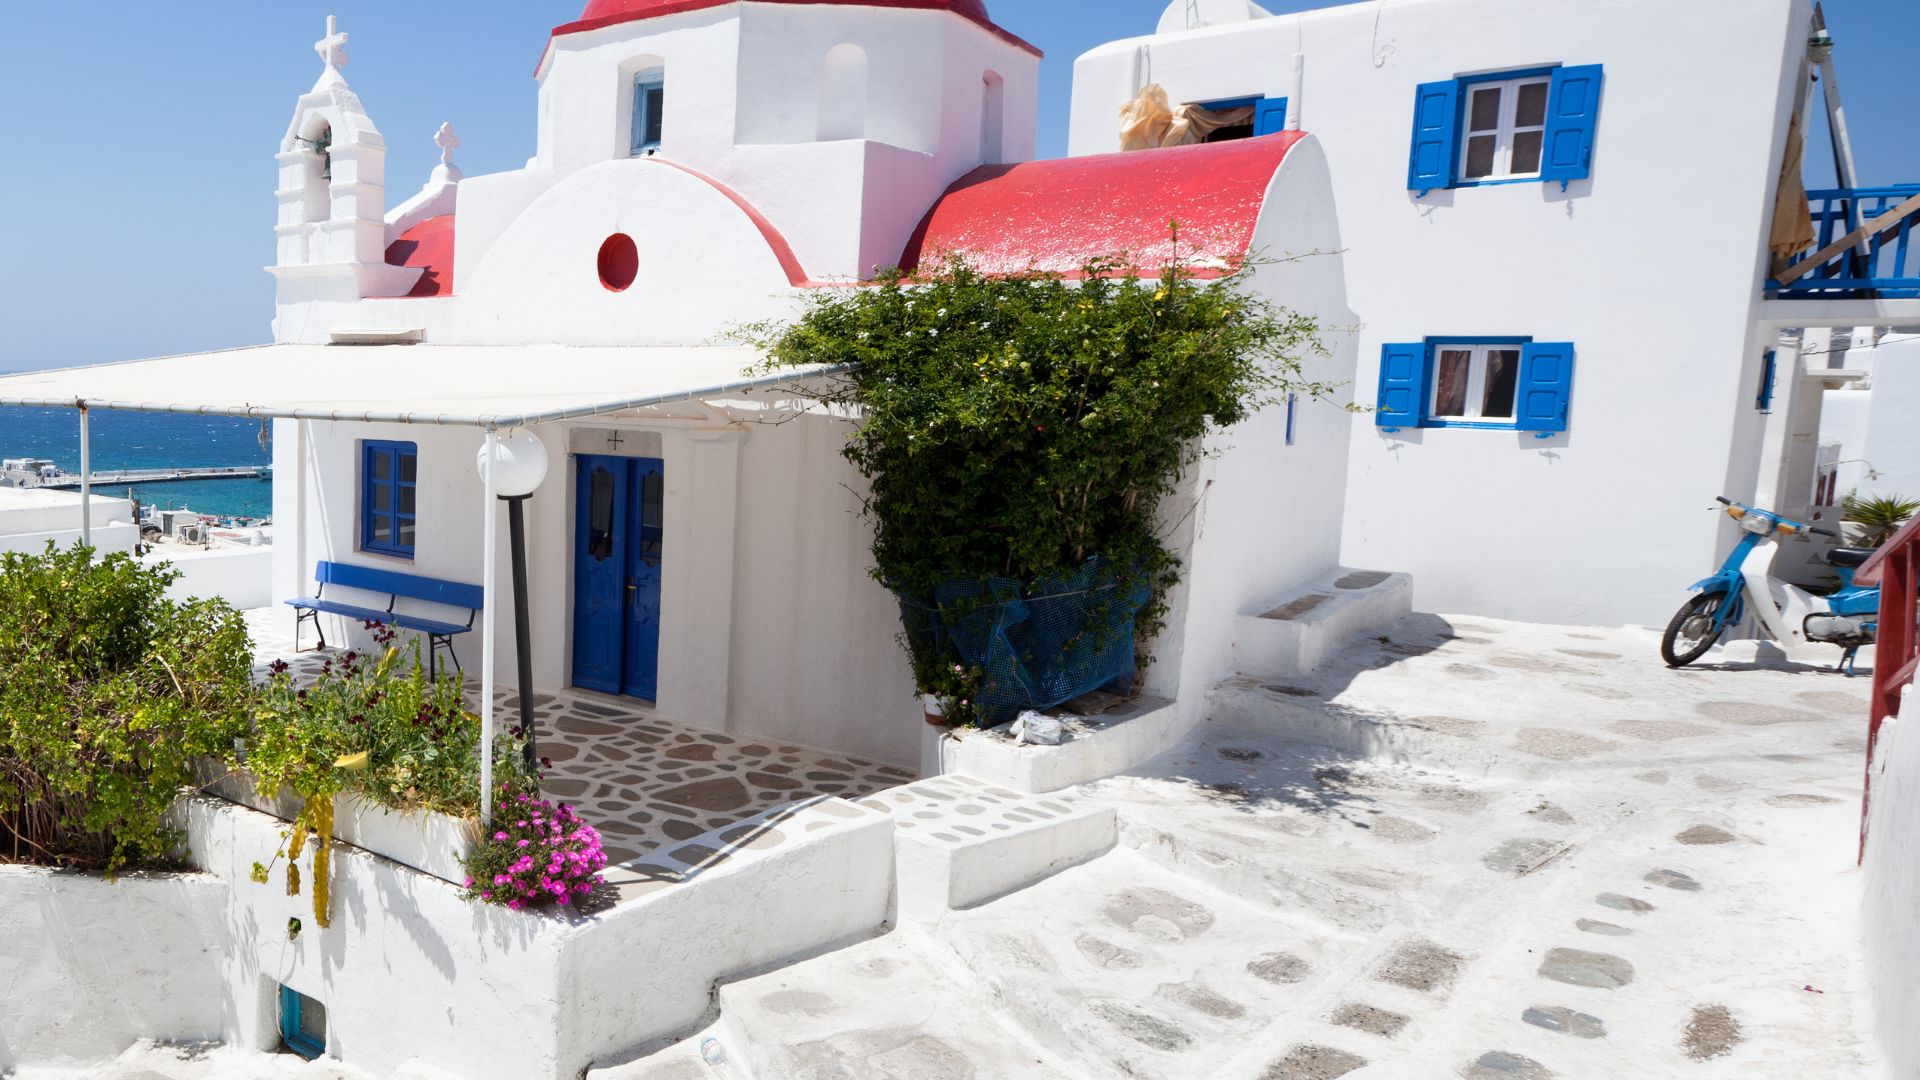 Mykonos wedding villas-Vivestia | Risk-Free Villas, Hotels and Cruises in VR